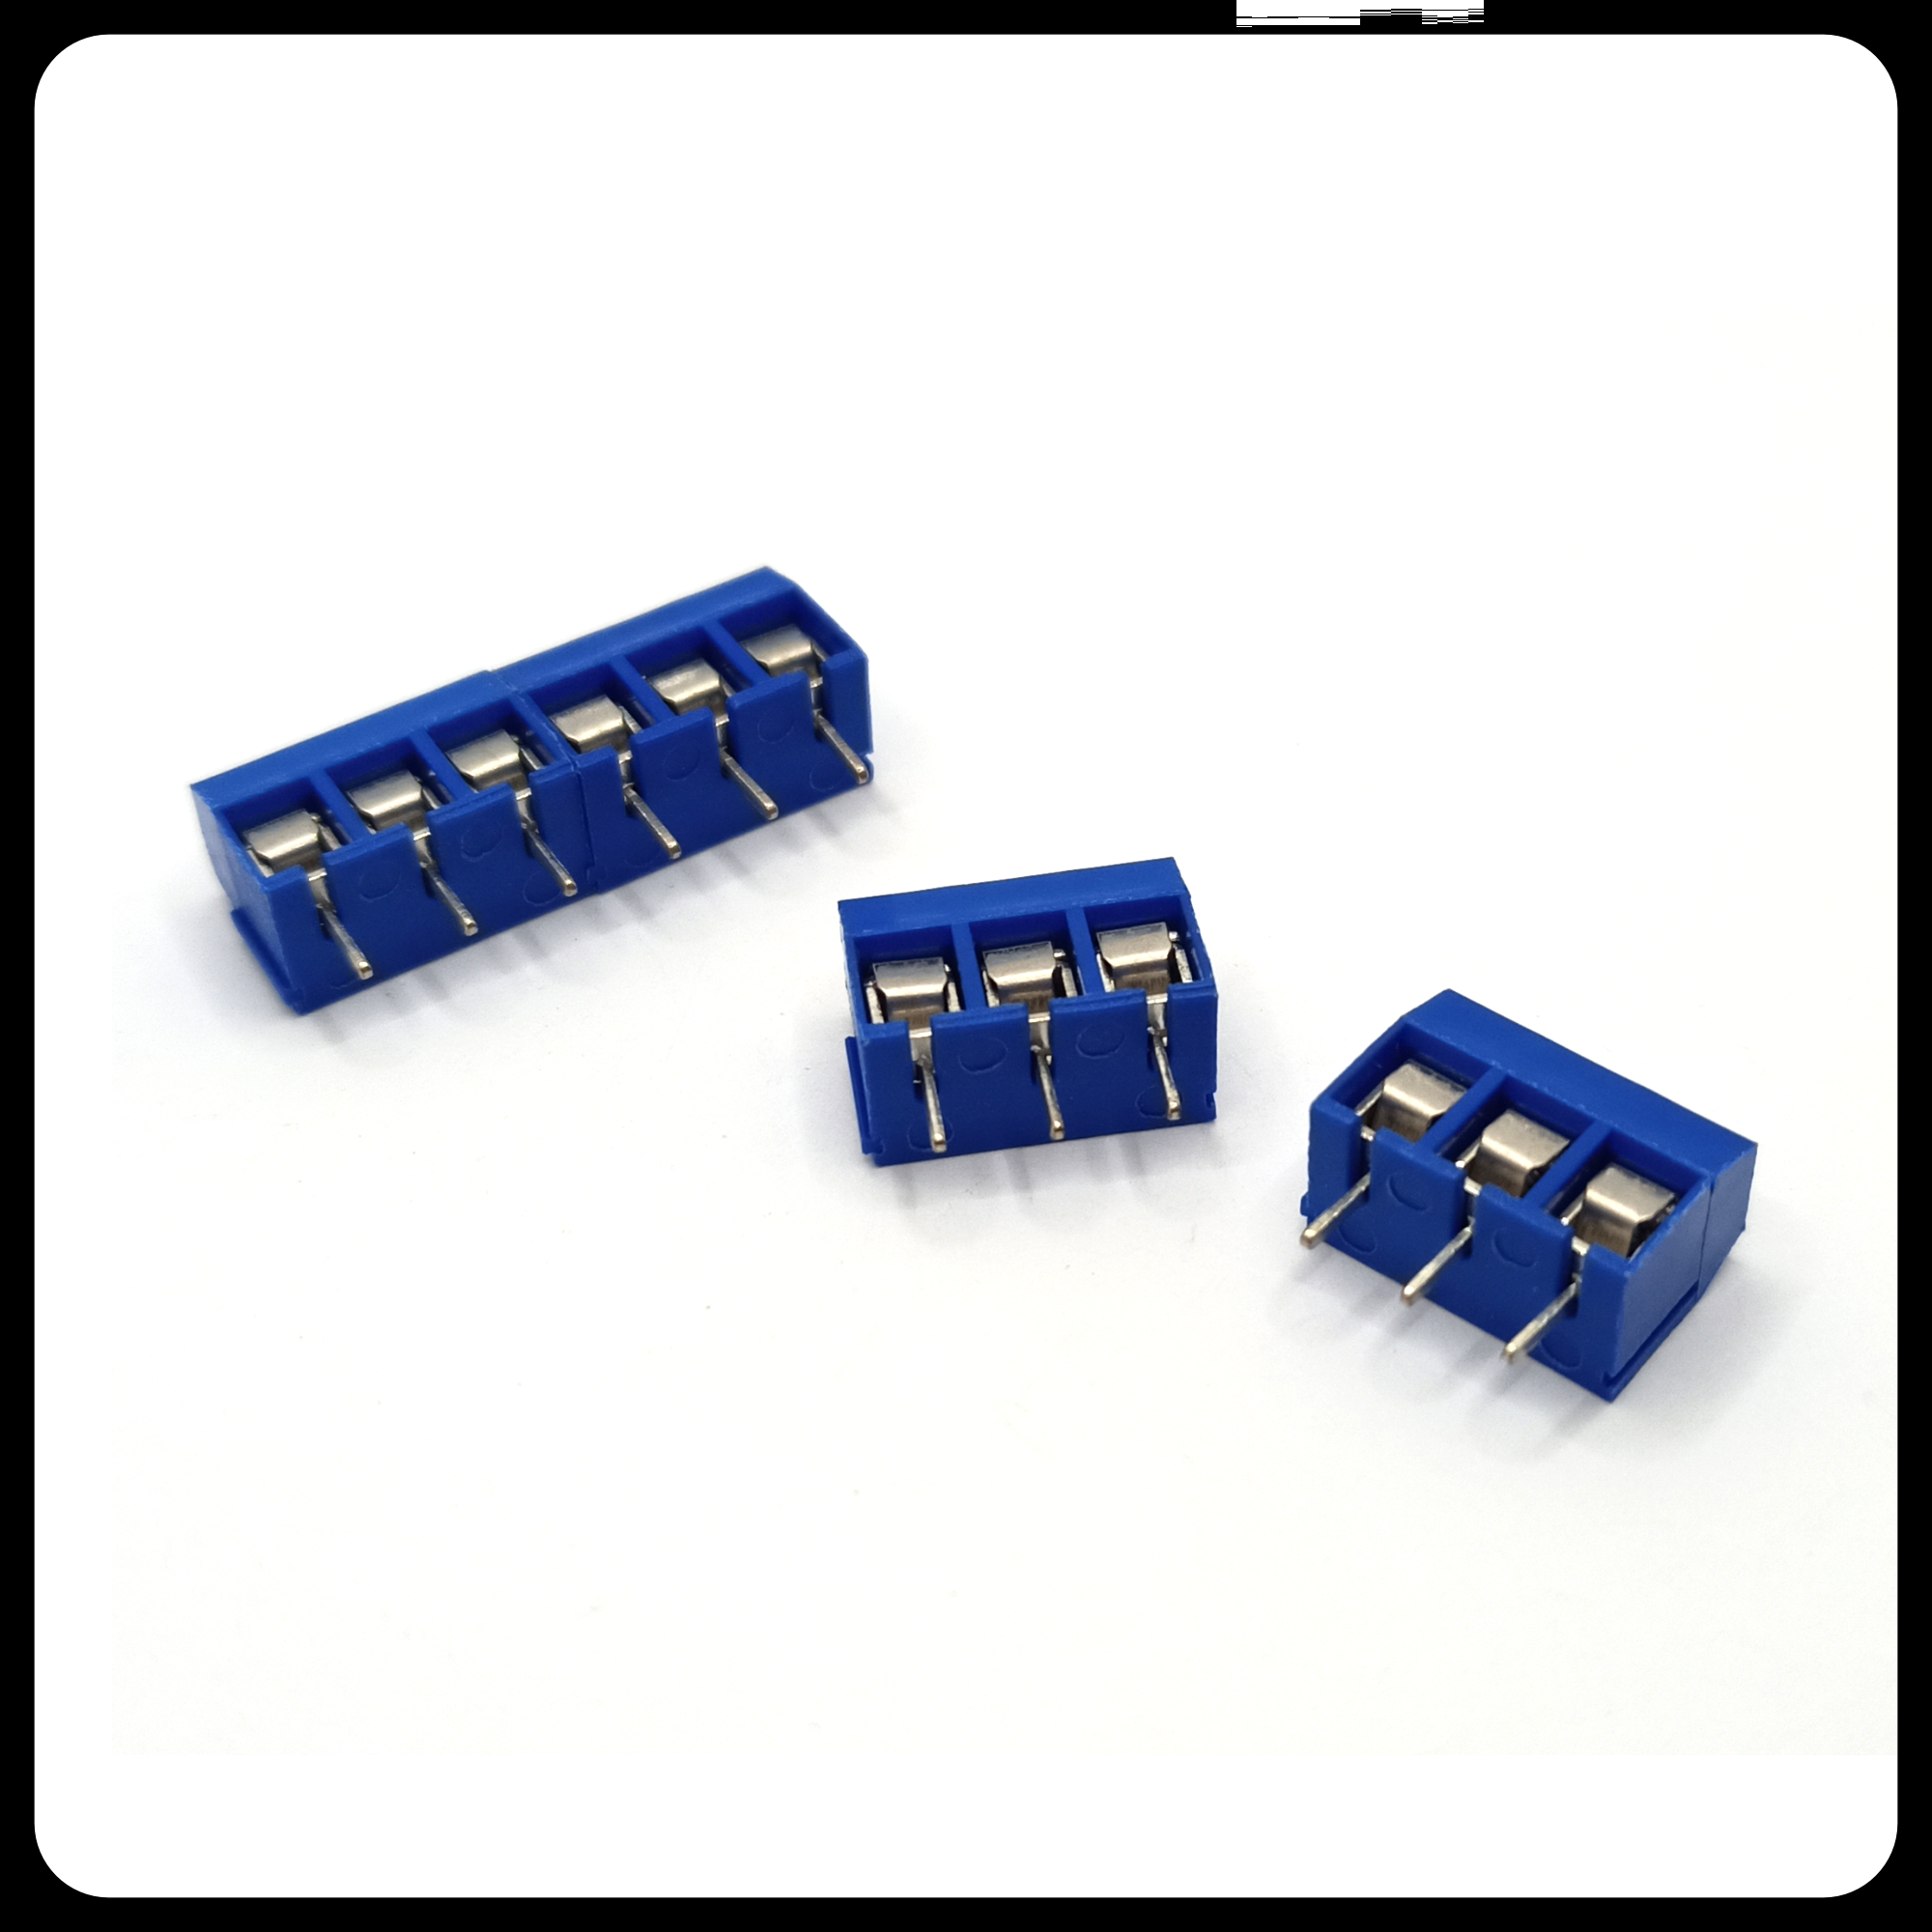 Terminal blocks screw type for guitar wiring